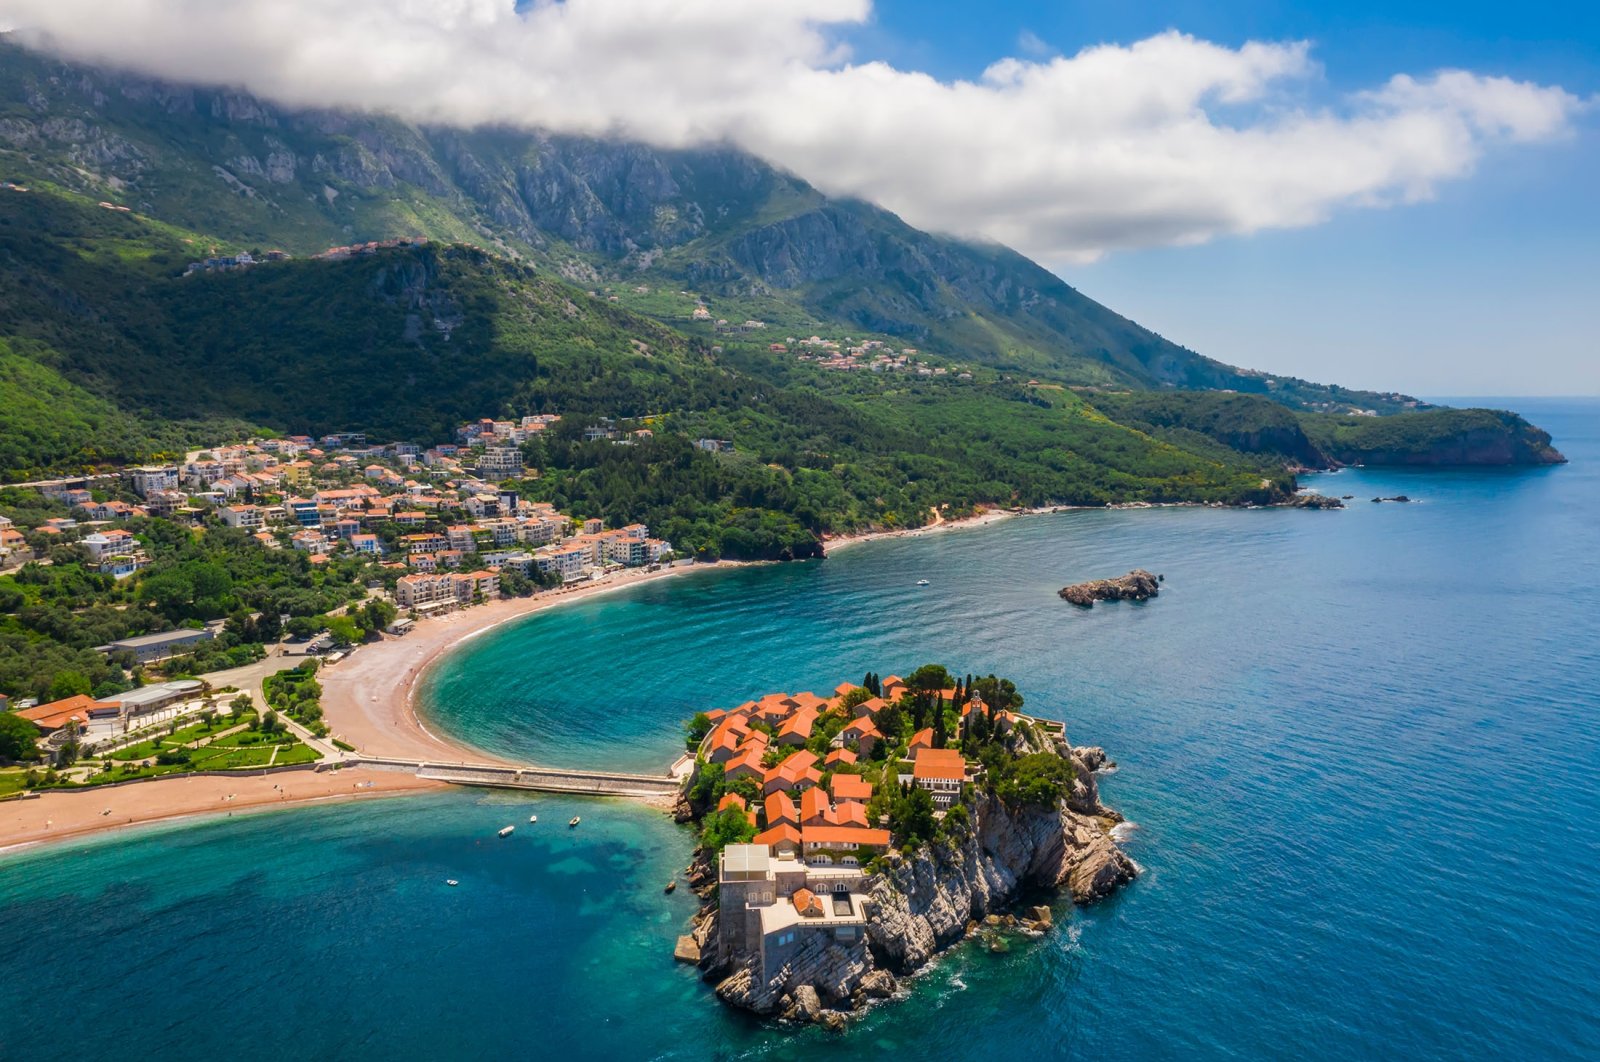 Pegunungan di punggung Anda, laut di kaki Anda: Budva, mutiara Adriatik